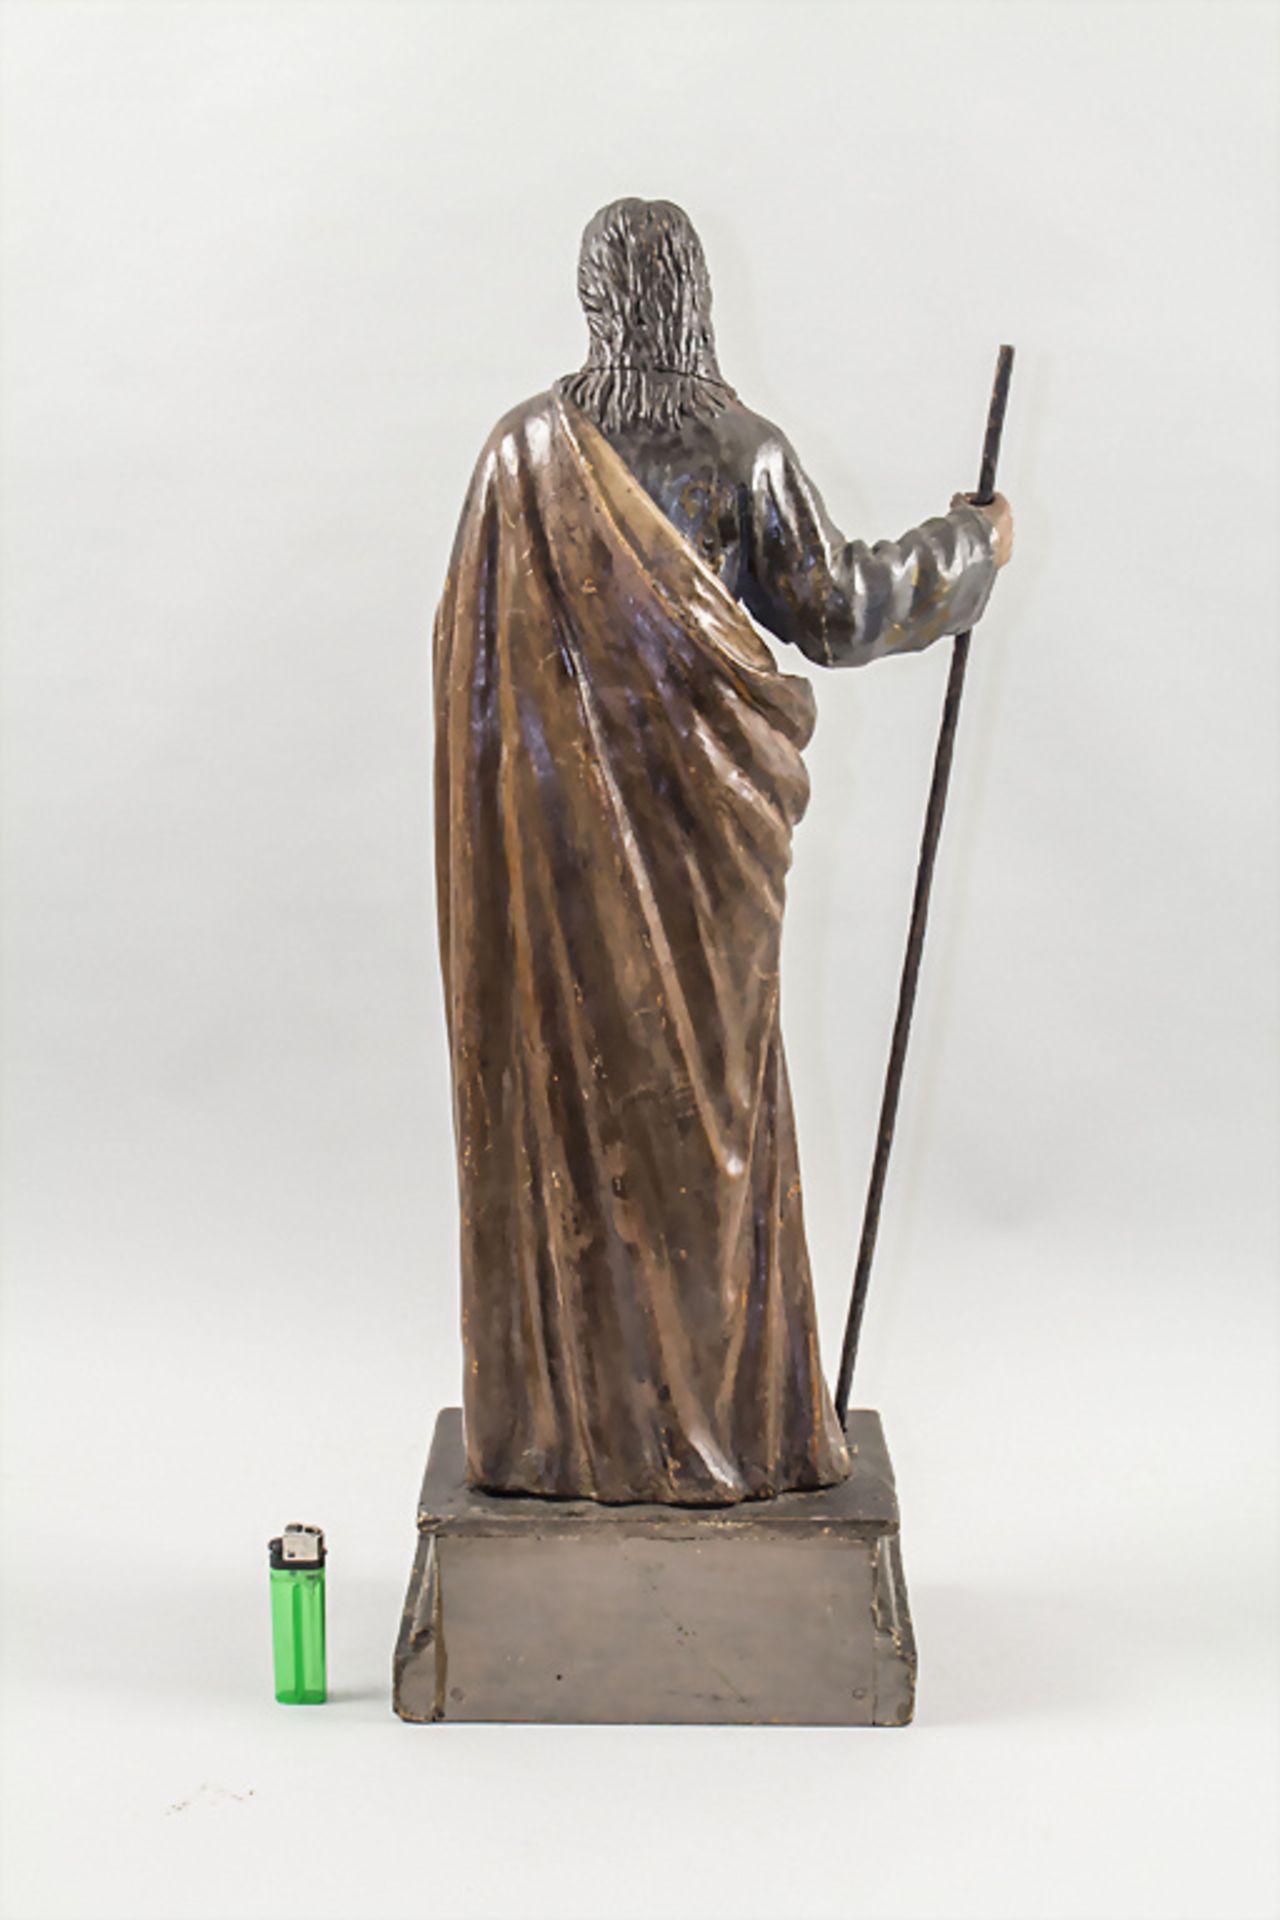 Holzskulptur 'Jesus' / A wooden sculpture depicting Jesus, Italien, 18./19. Jh. - Image 5 of 7